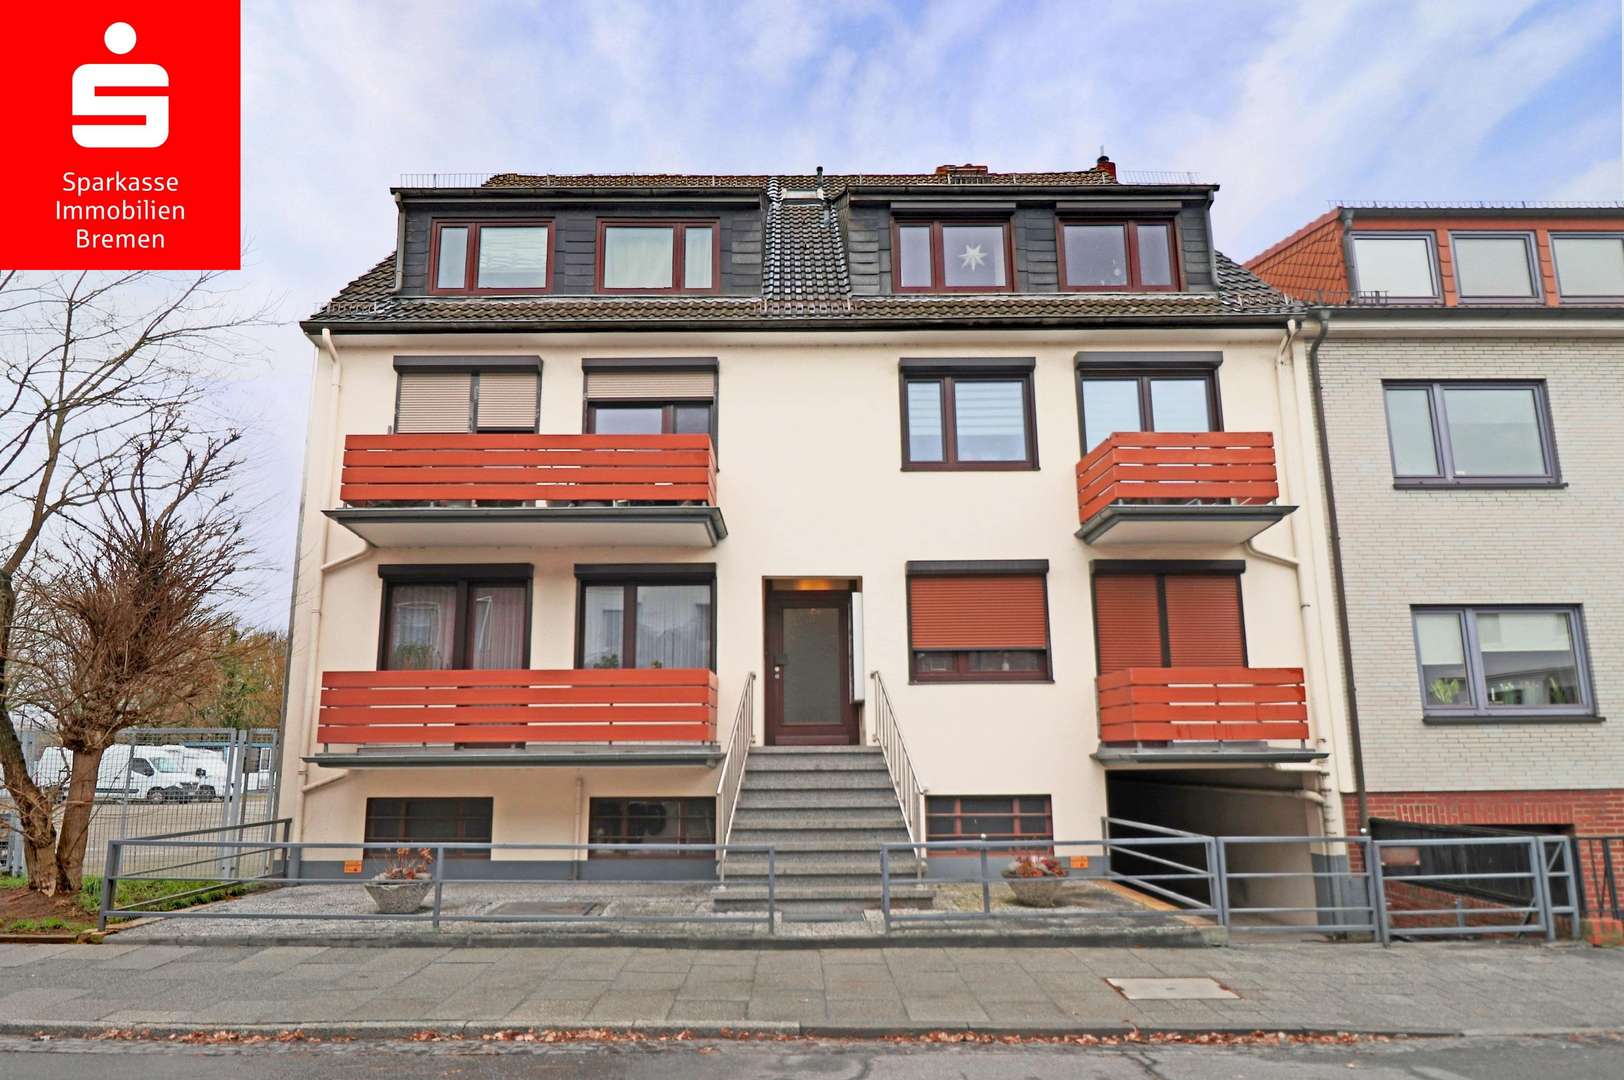 Außenansicht - Etagenwohnung in 28197 Bremen mit 135m² als Kapitalanlage kaufen